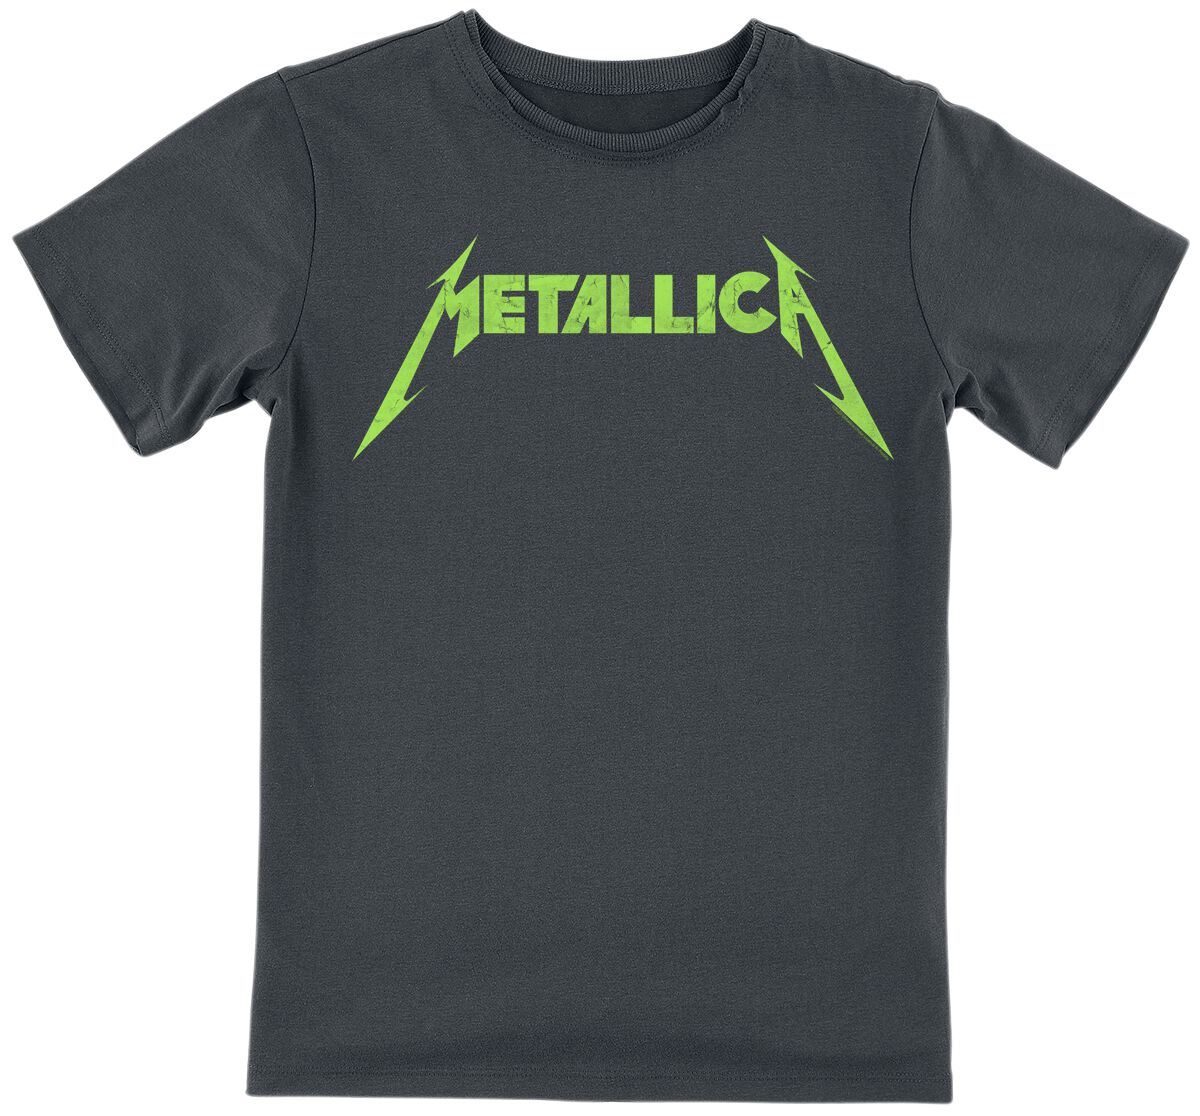 Metallica T-Shirt für Kleinkinder - Amplified Collection - Kids - Neon Logo - für Mädchen & Jungen - charcoal  - Lizenziertes Merchandise!